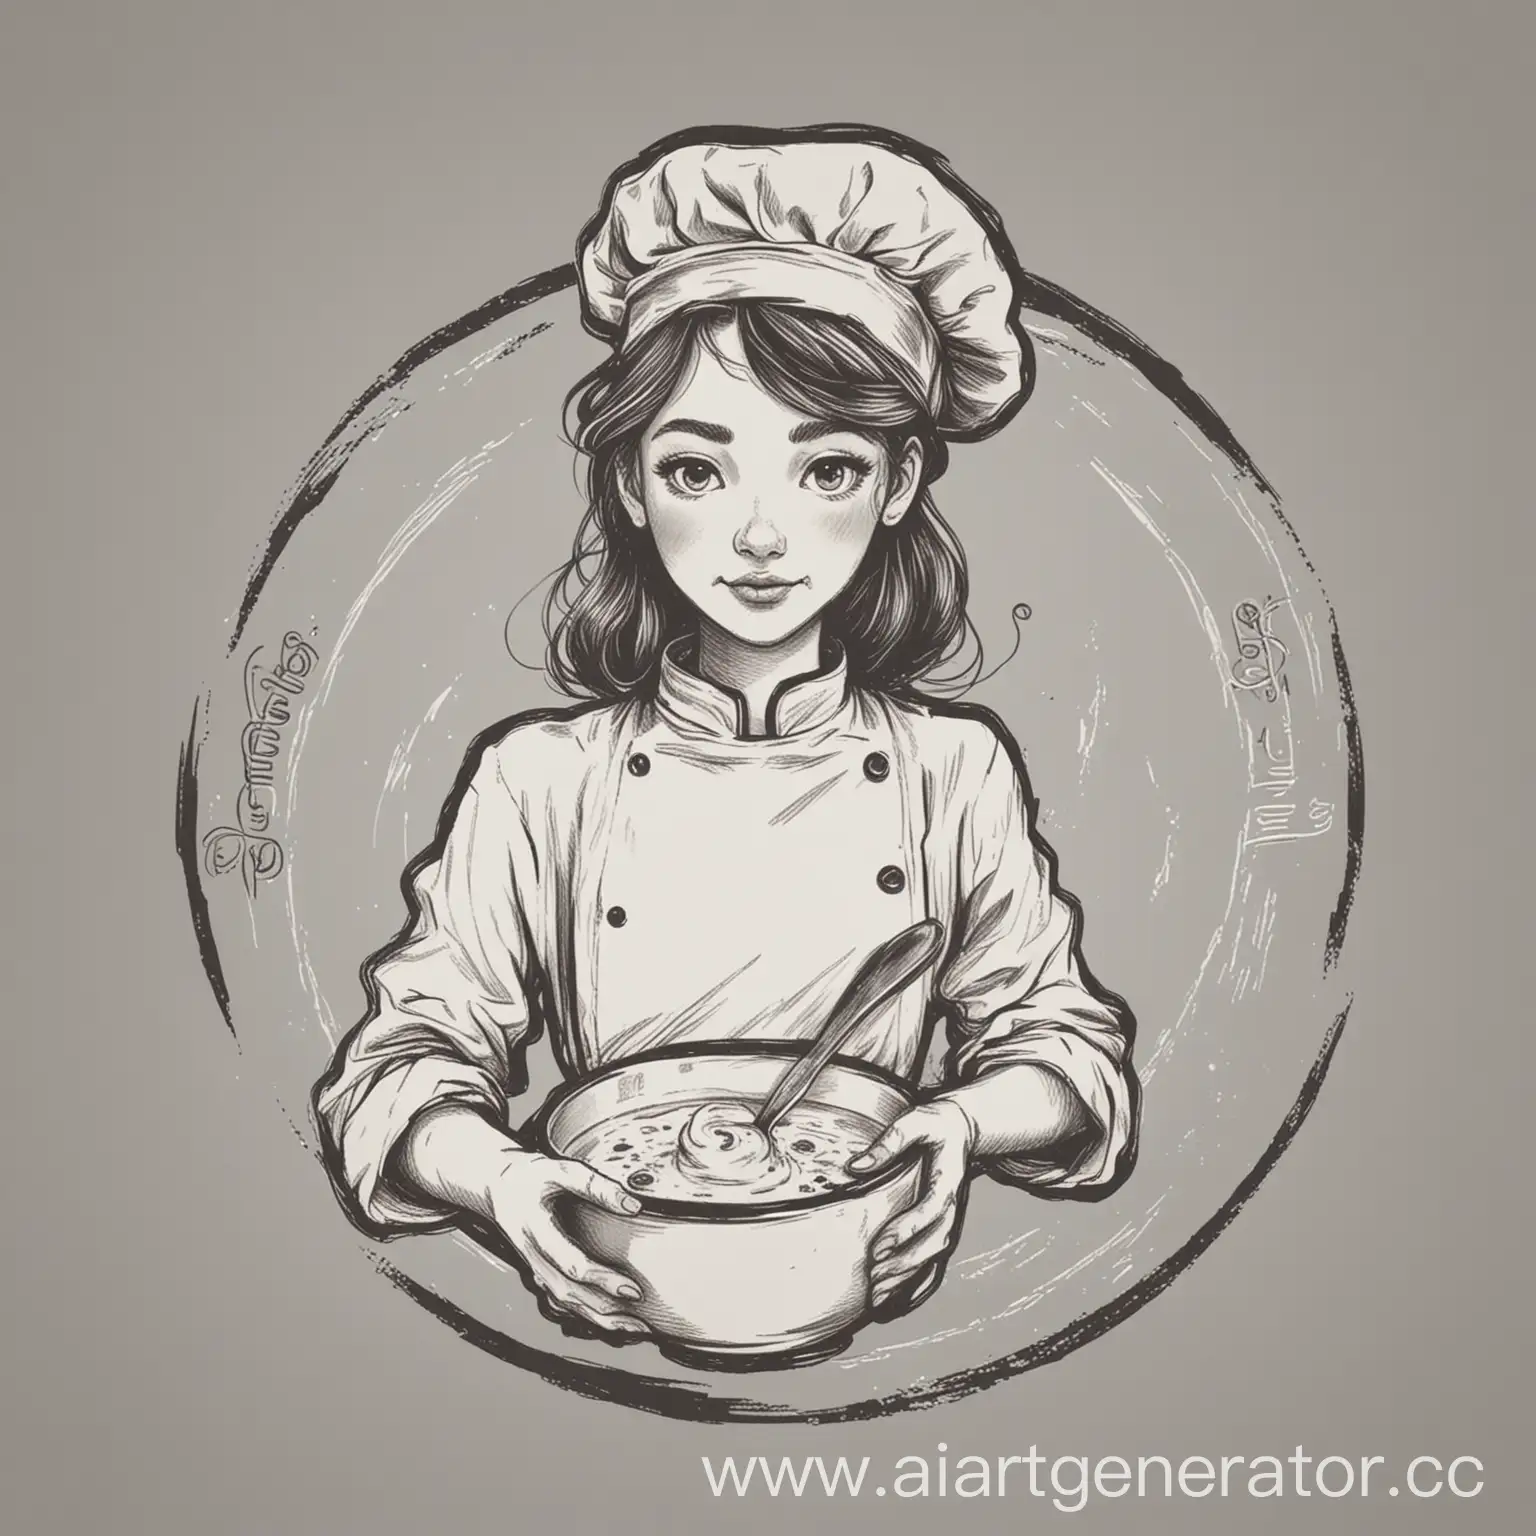 Черно белый логотип на котором изображена линиями девушка повар, держащая перед собой в руках тарелку с супом